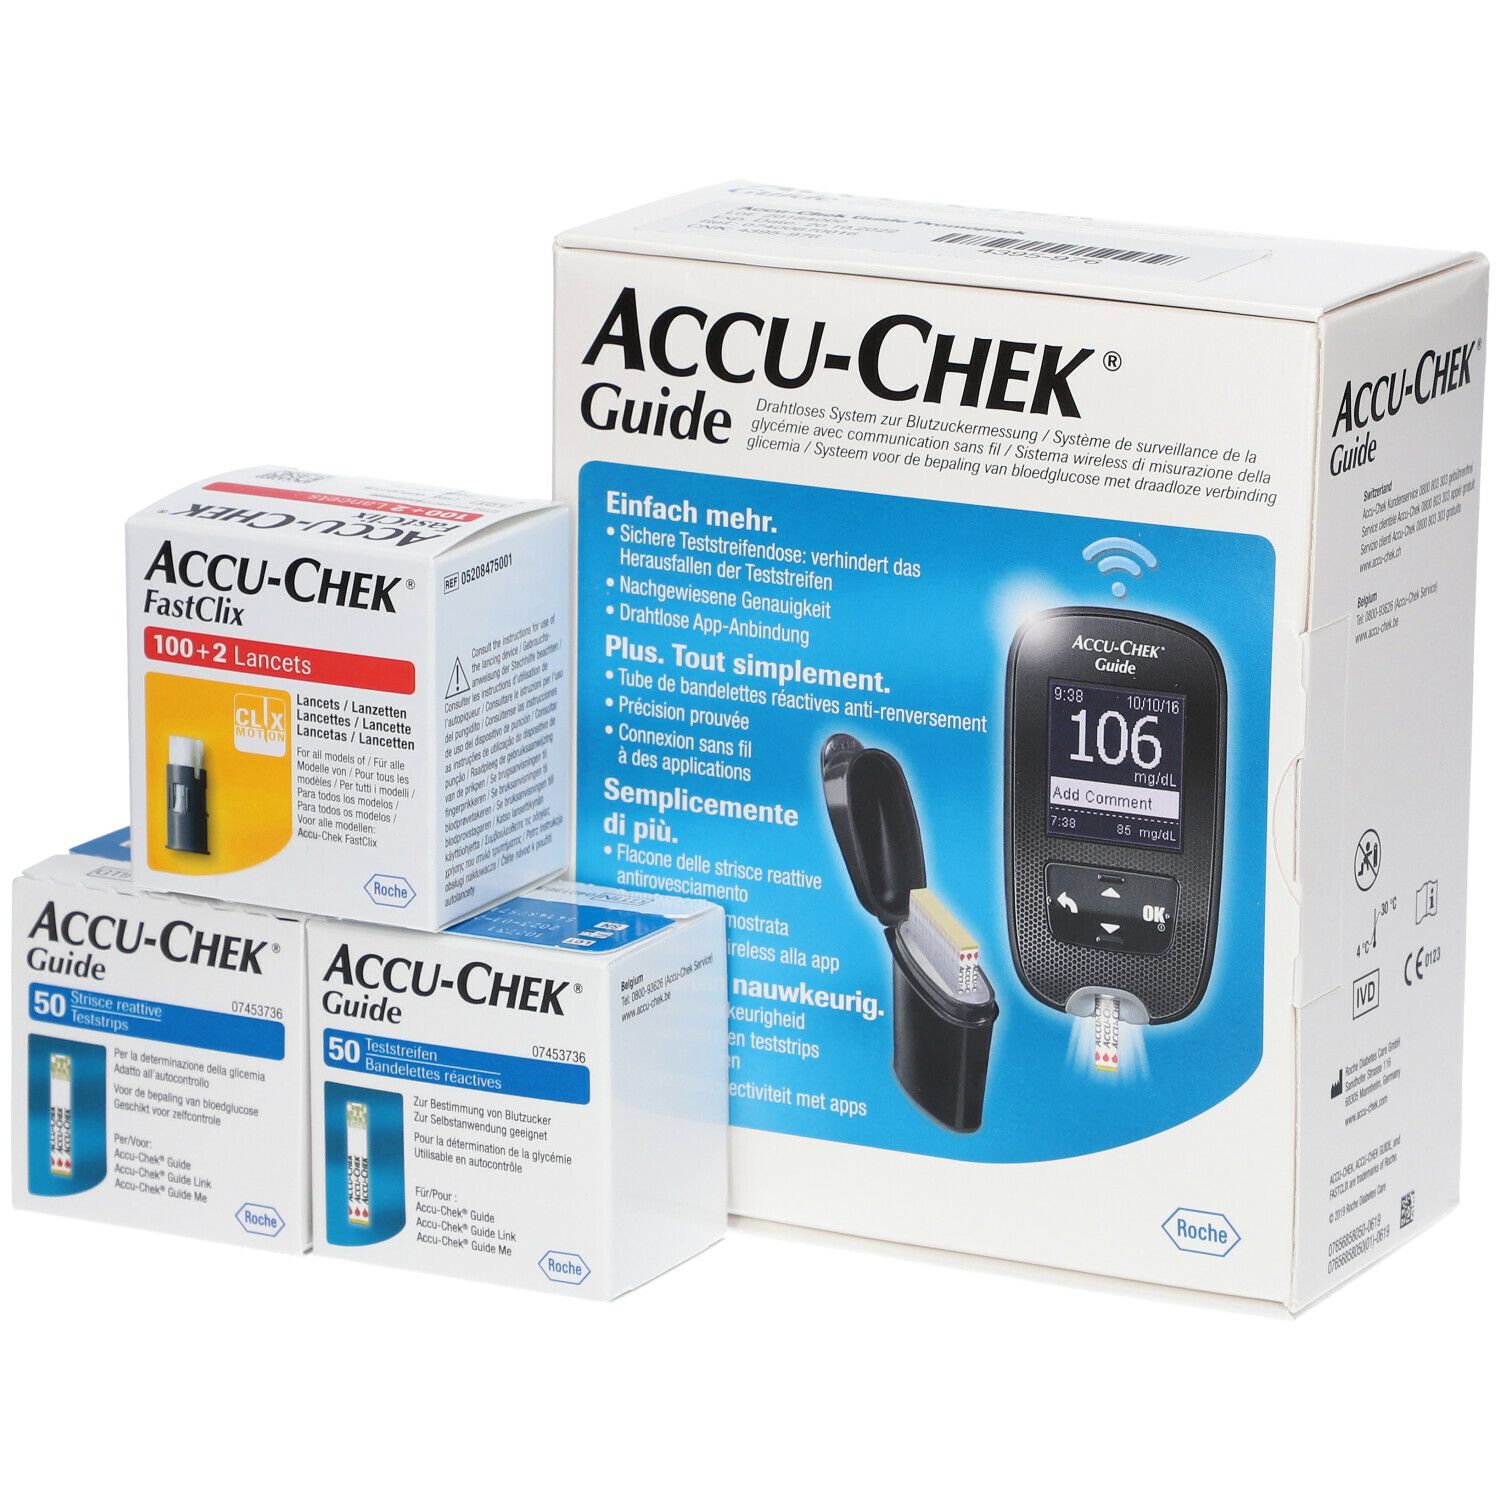 Accu-chek - Mobile - Lecteur de glycémie rapide - ROCHE